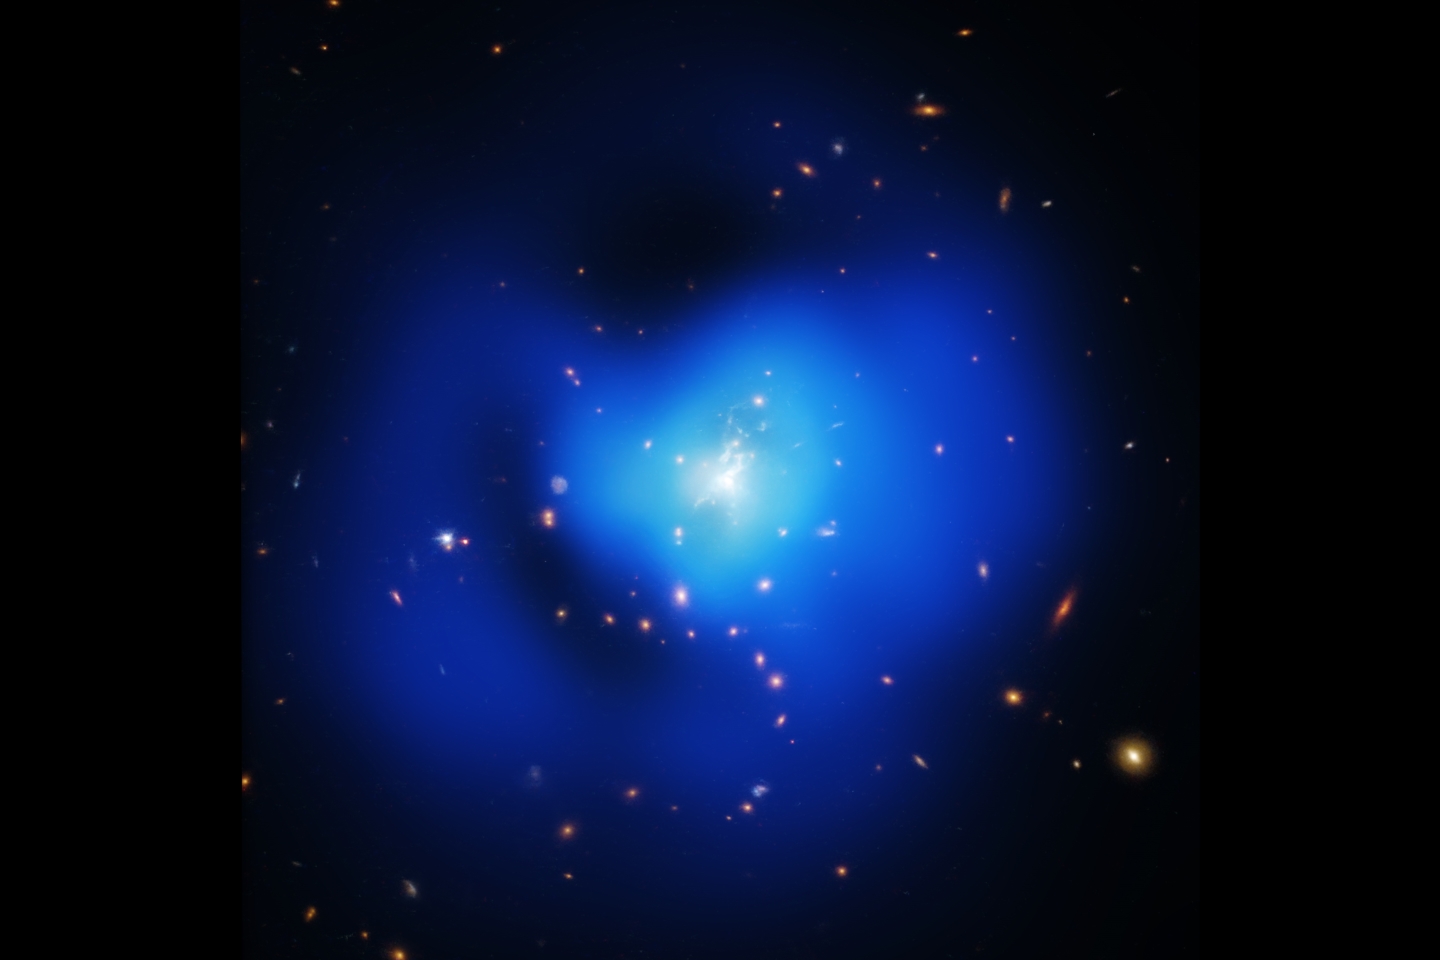 Свежий взгляд на экстраординарный кластер галактик. Галактические кластеры часто описываются превосходными степенями. В конце концов, это огромные конгломераты галактик, горячего газа и темной материи и представляют собой самые большие структуры во Вселенной, удерживаемые вместе гравитацией.